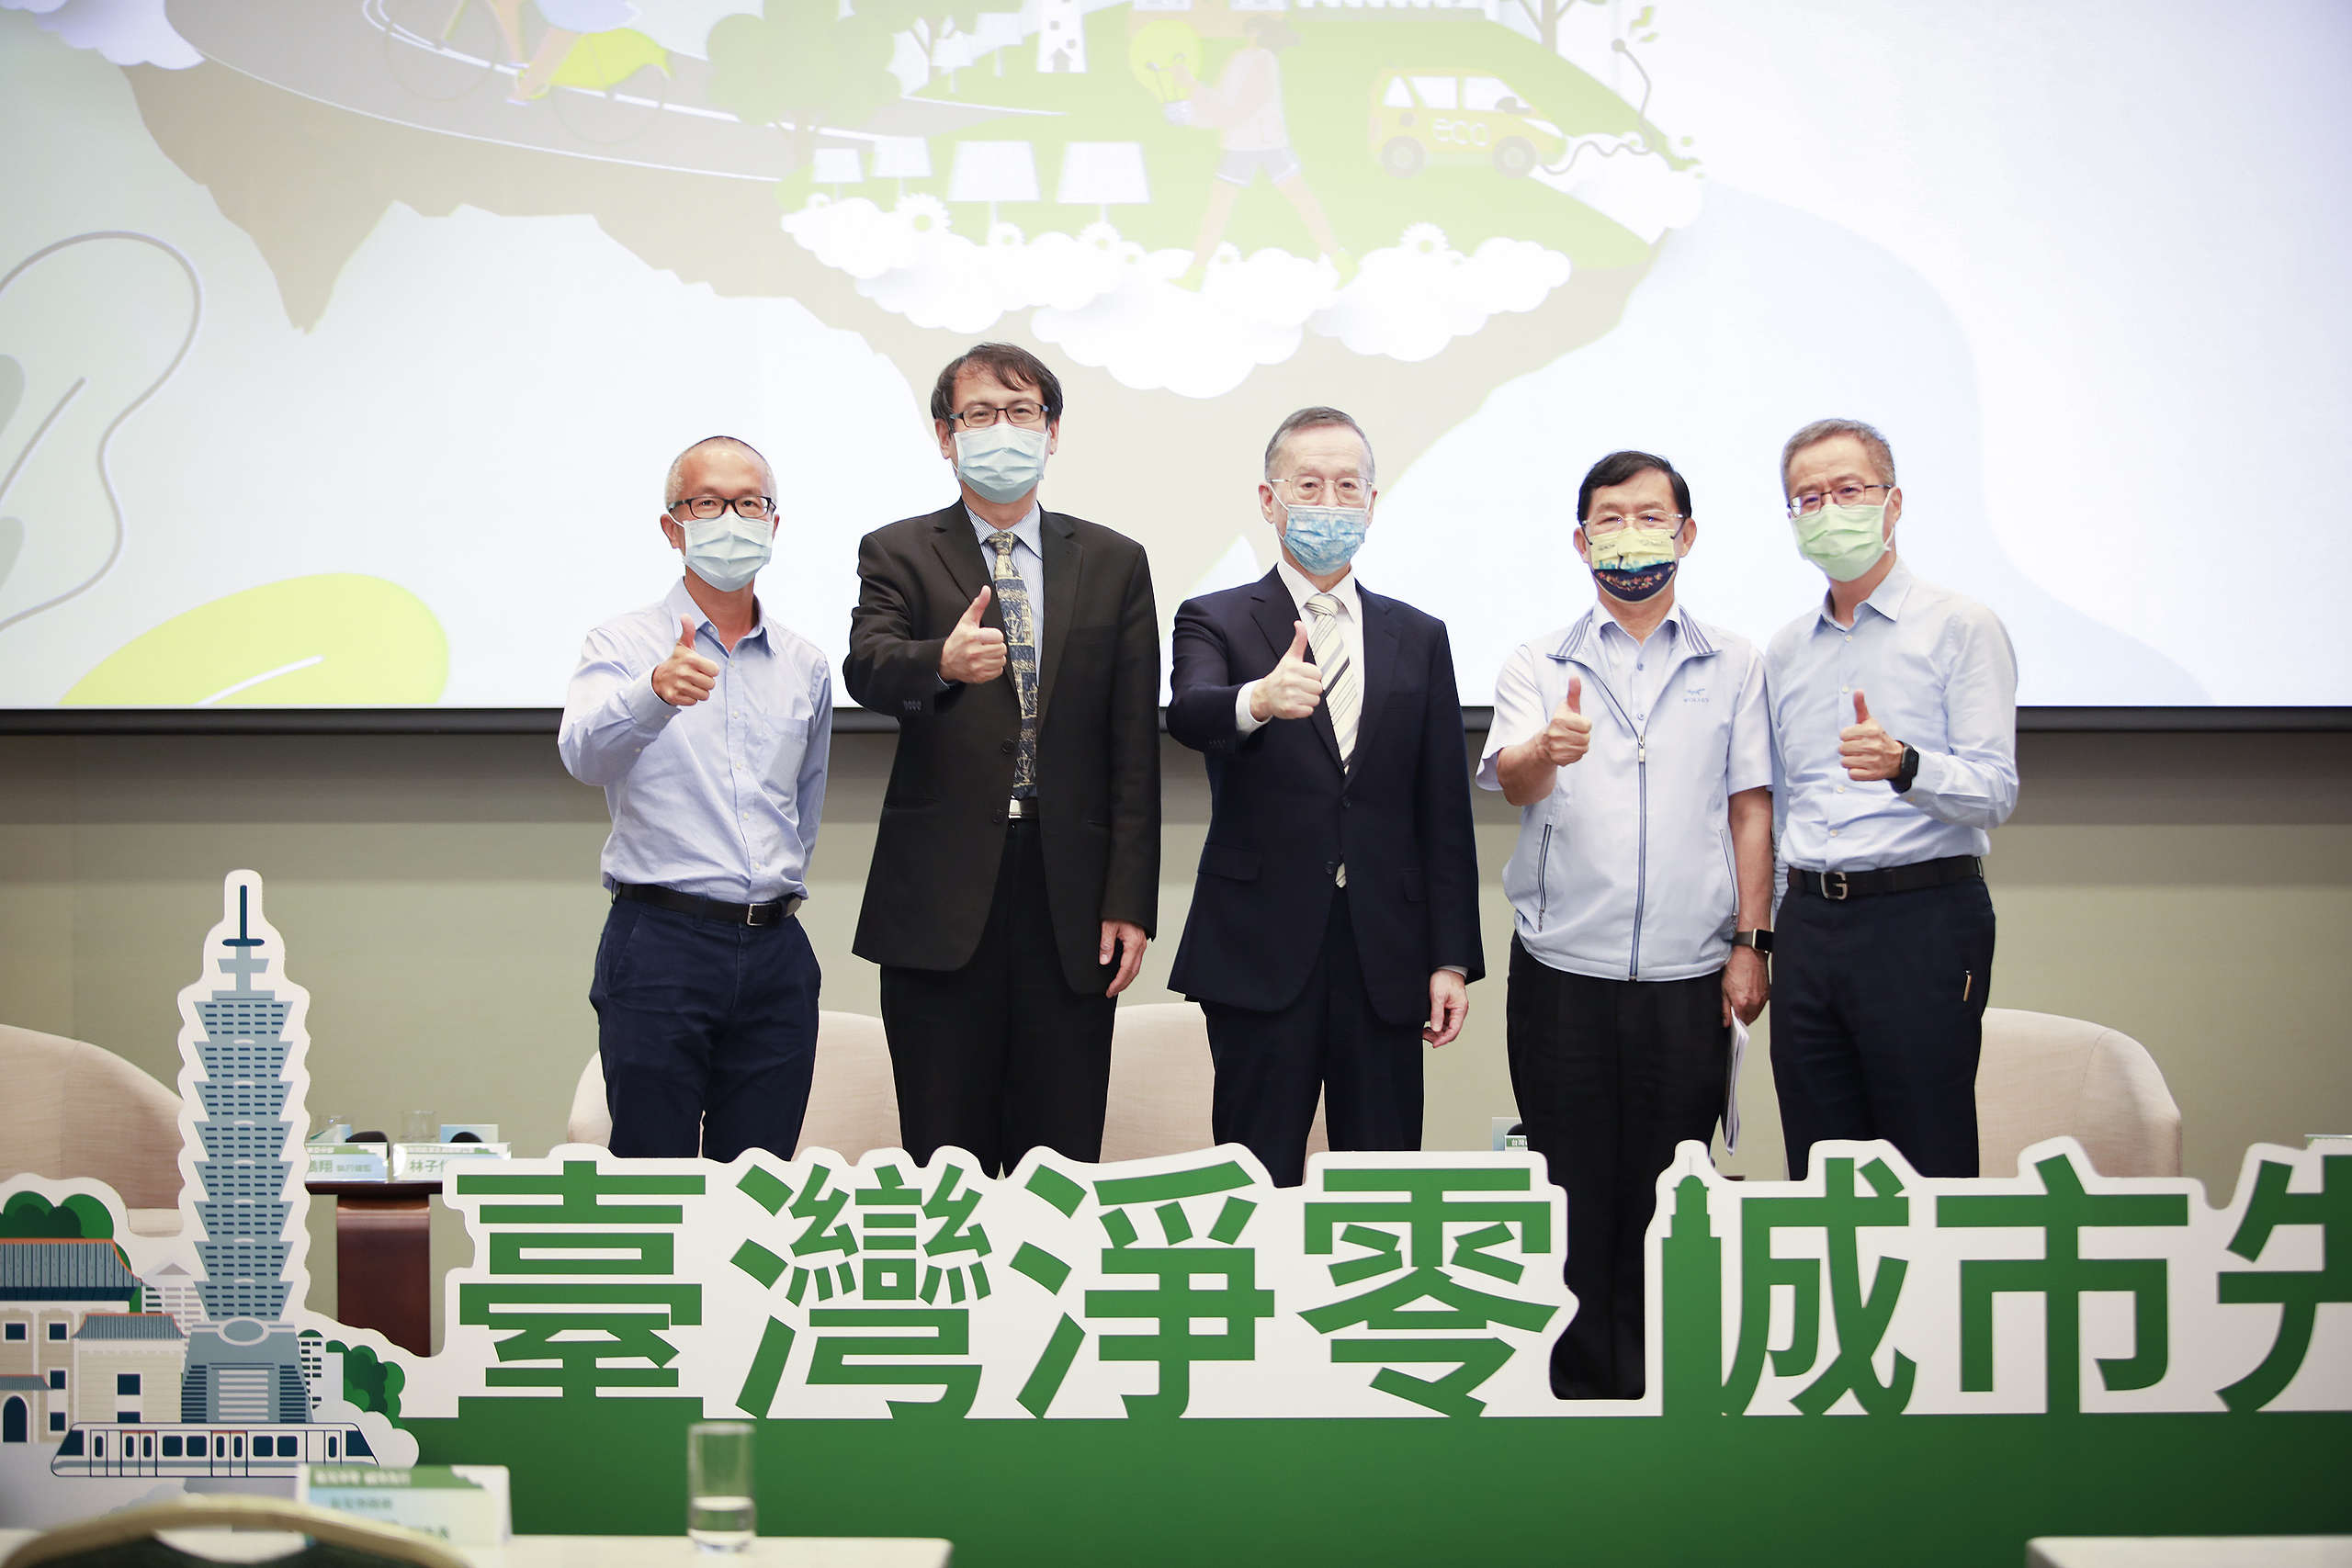 綠色和平舉行「台灣淨零 城市先行論壇」，邀請官員出席並呼籲當局推動減碳。© Greenpeace